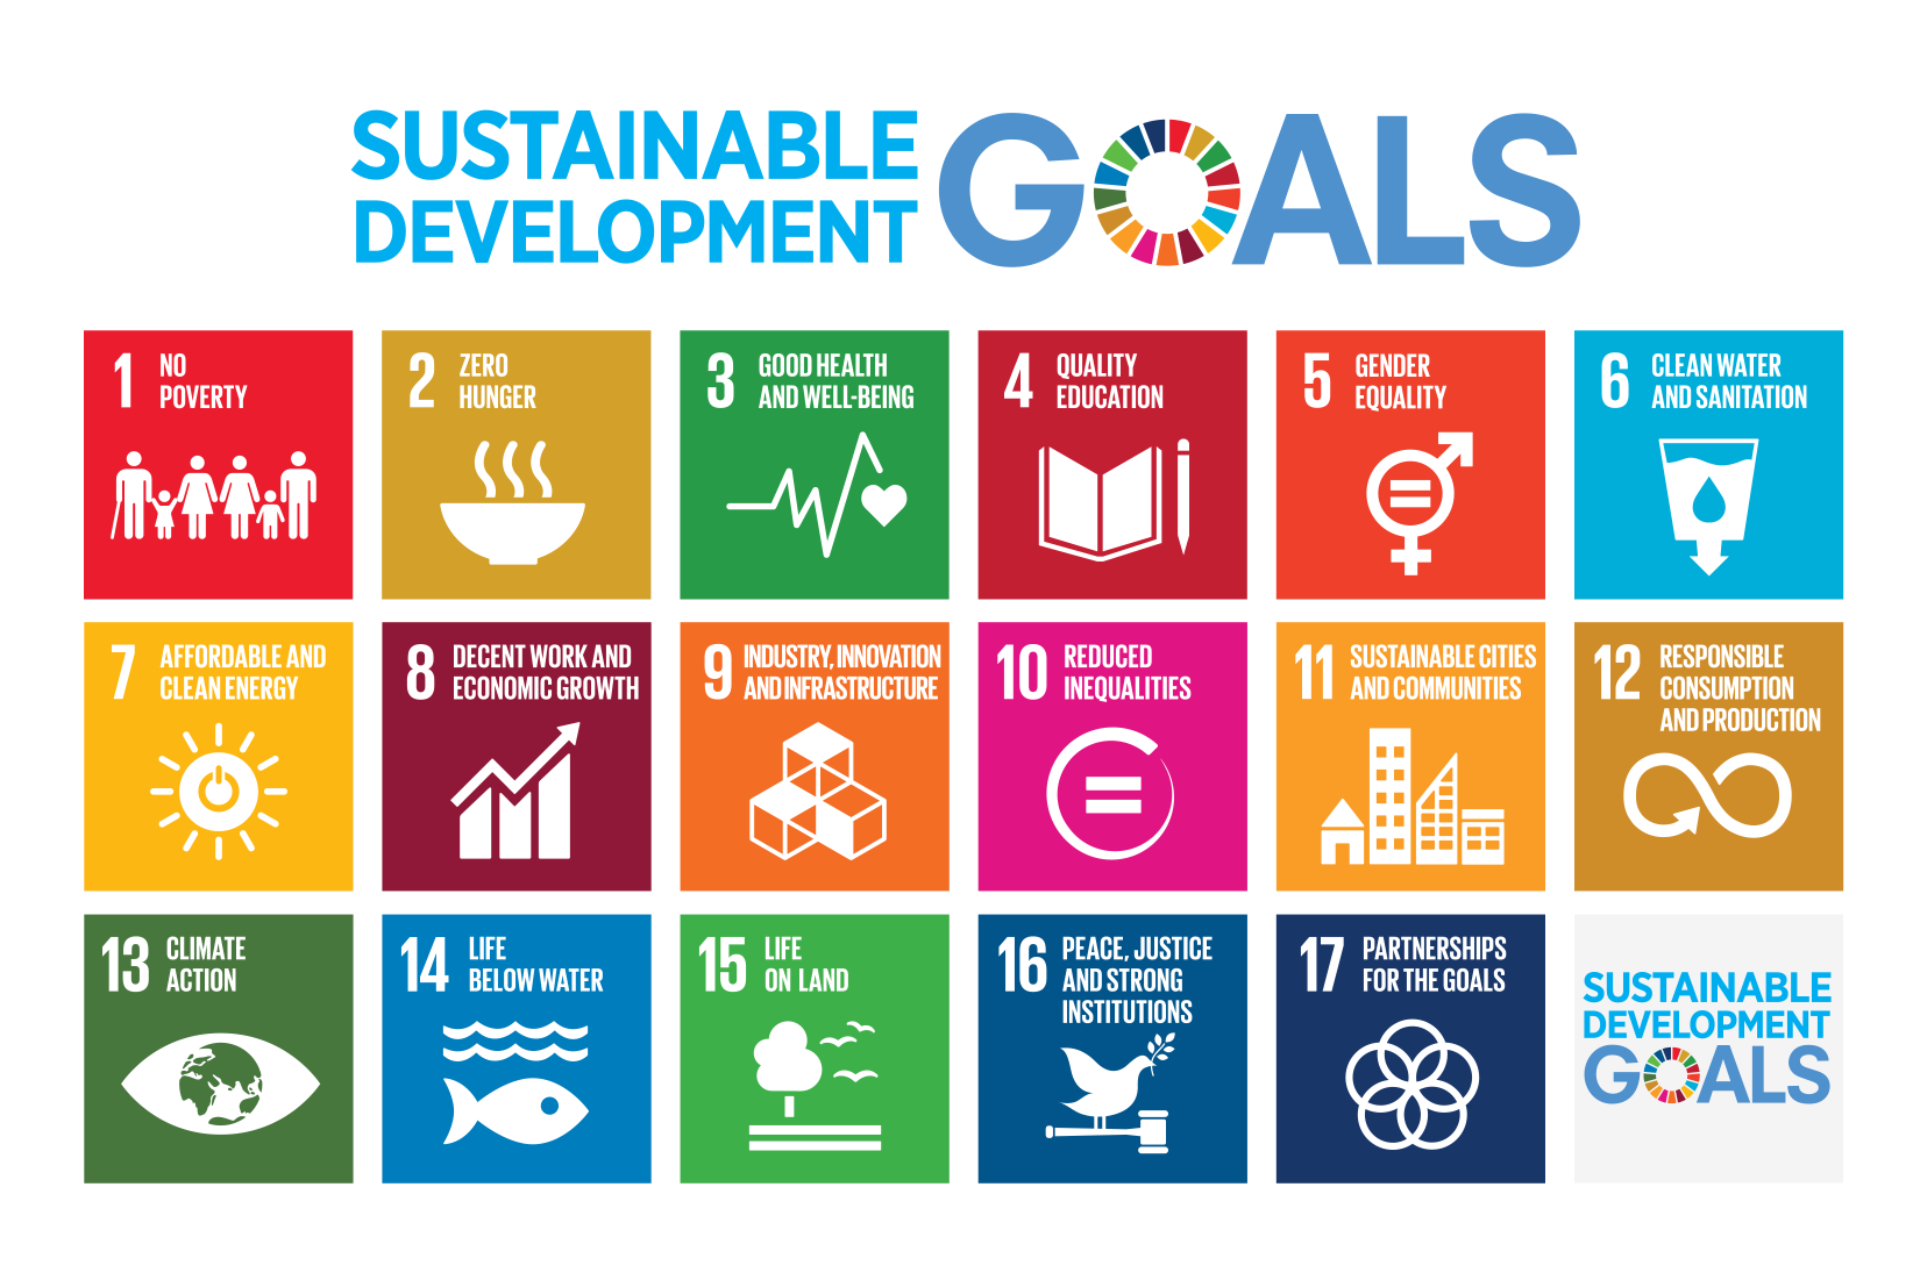 Цели ООН В области устойчивого развития до 2030. 17 Целей устойчивого развития ООН. Цели устойчивого развития ООН 2015-2030. Цели устойчивого развития на период до 2030 года. Цели оон 2015